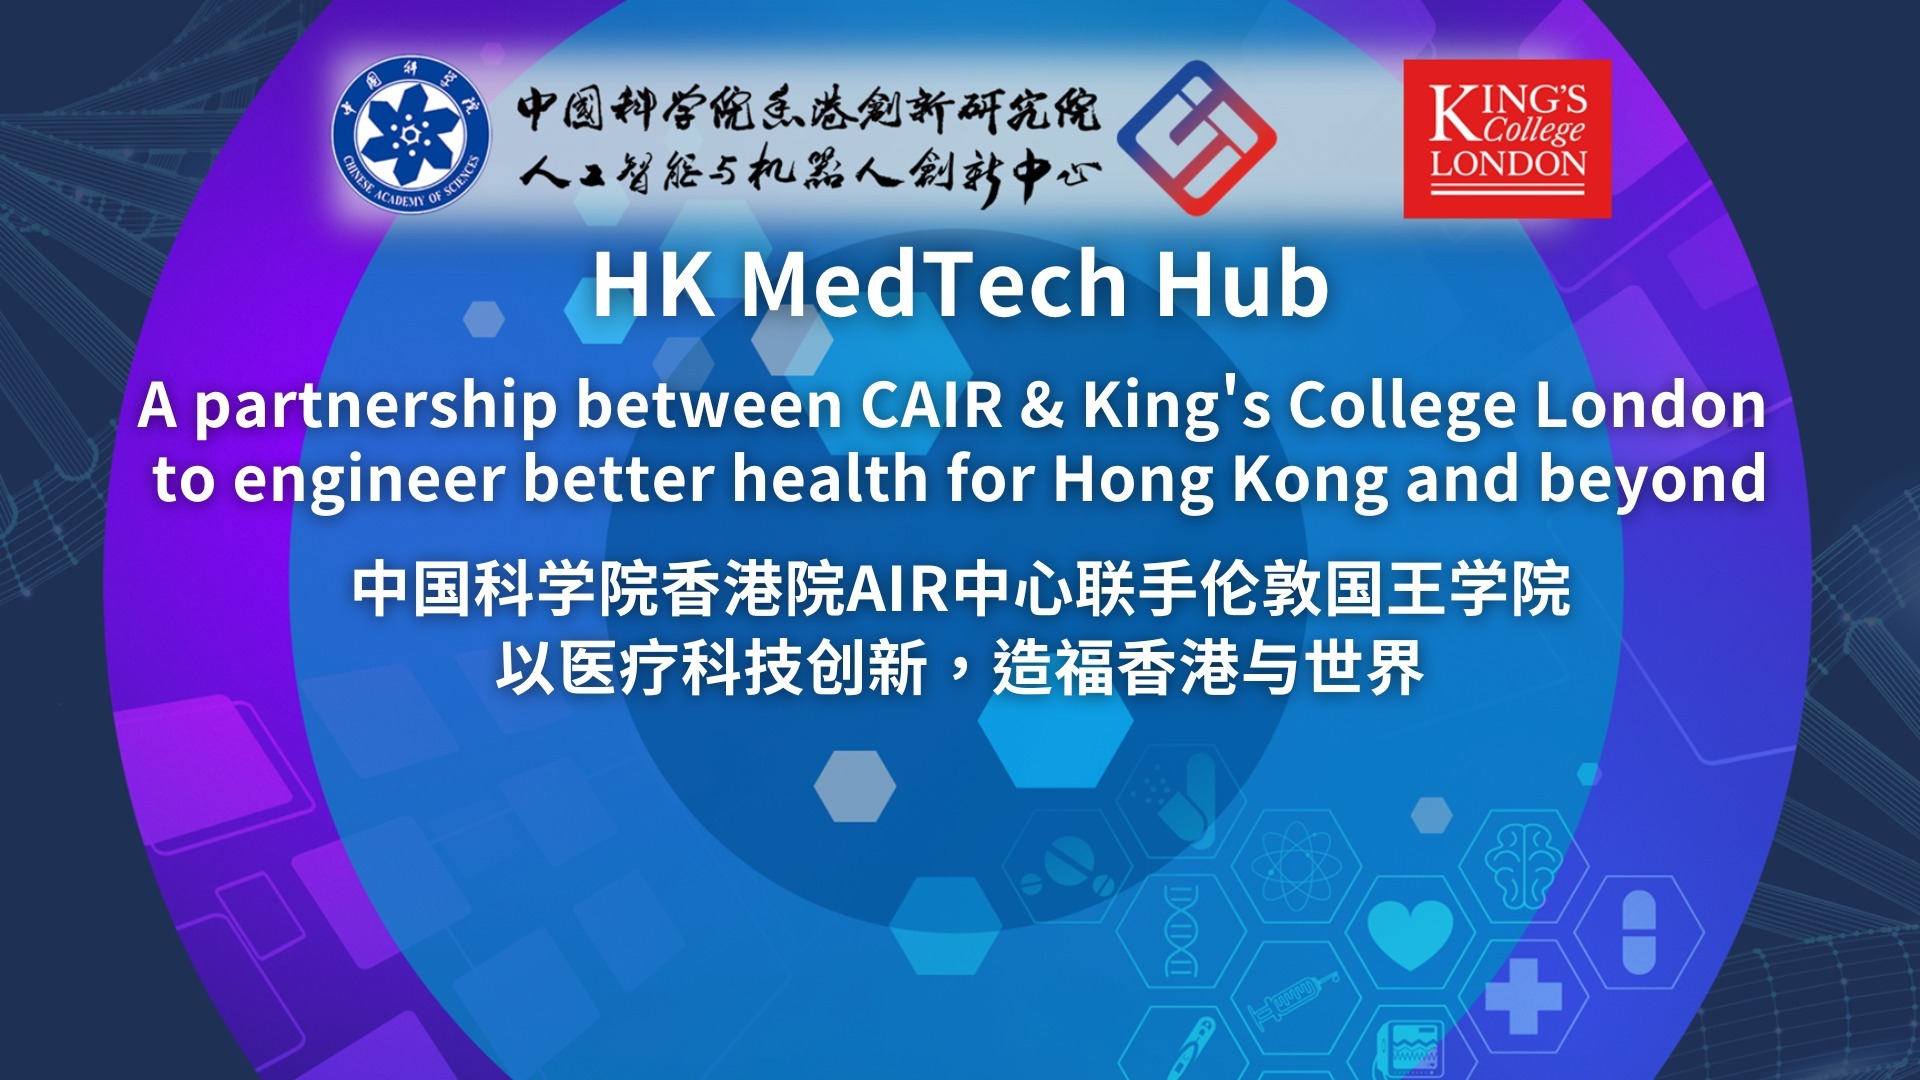 伦敦国王学院与中心共建医疗科技联合实验室-HK Medtech Hub活动周顺利举办